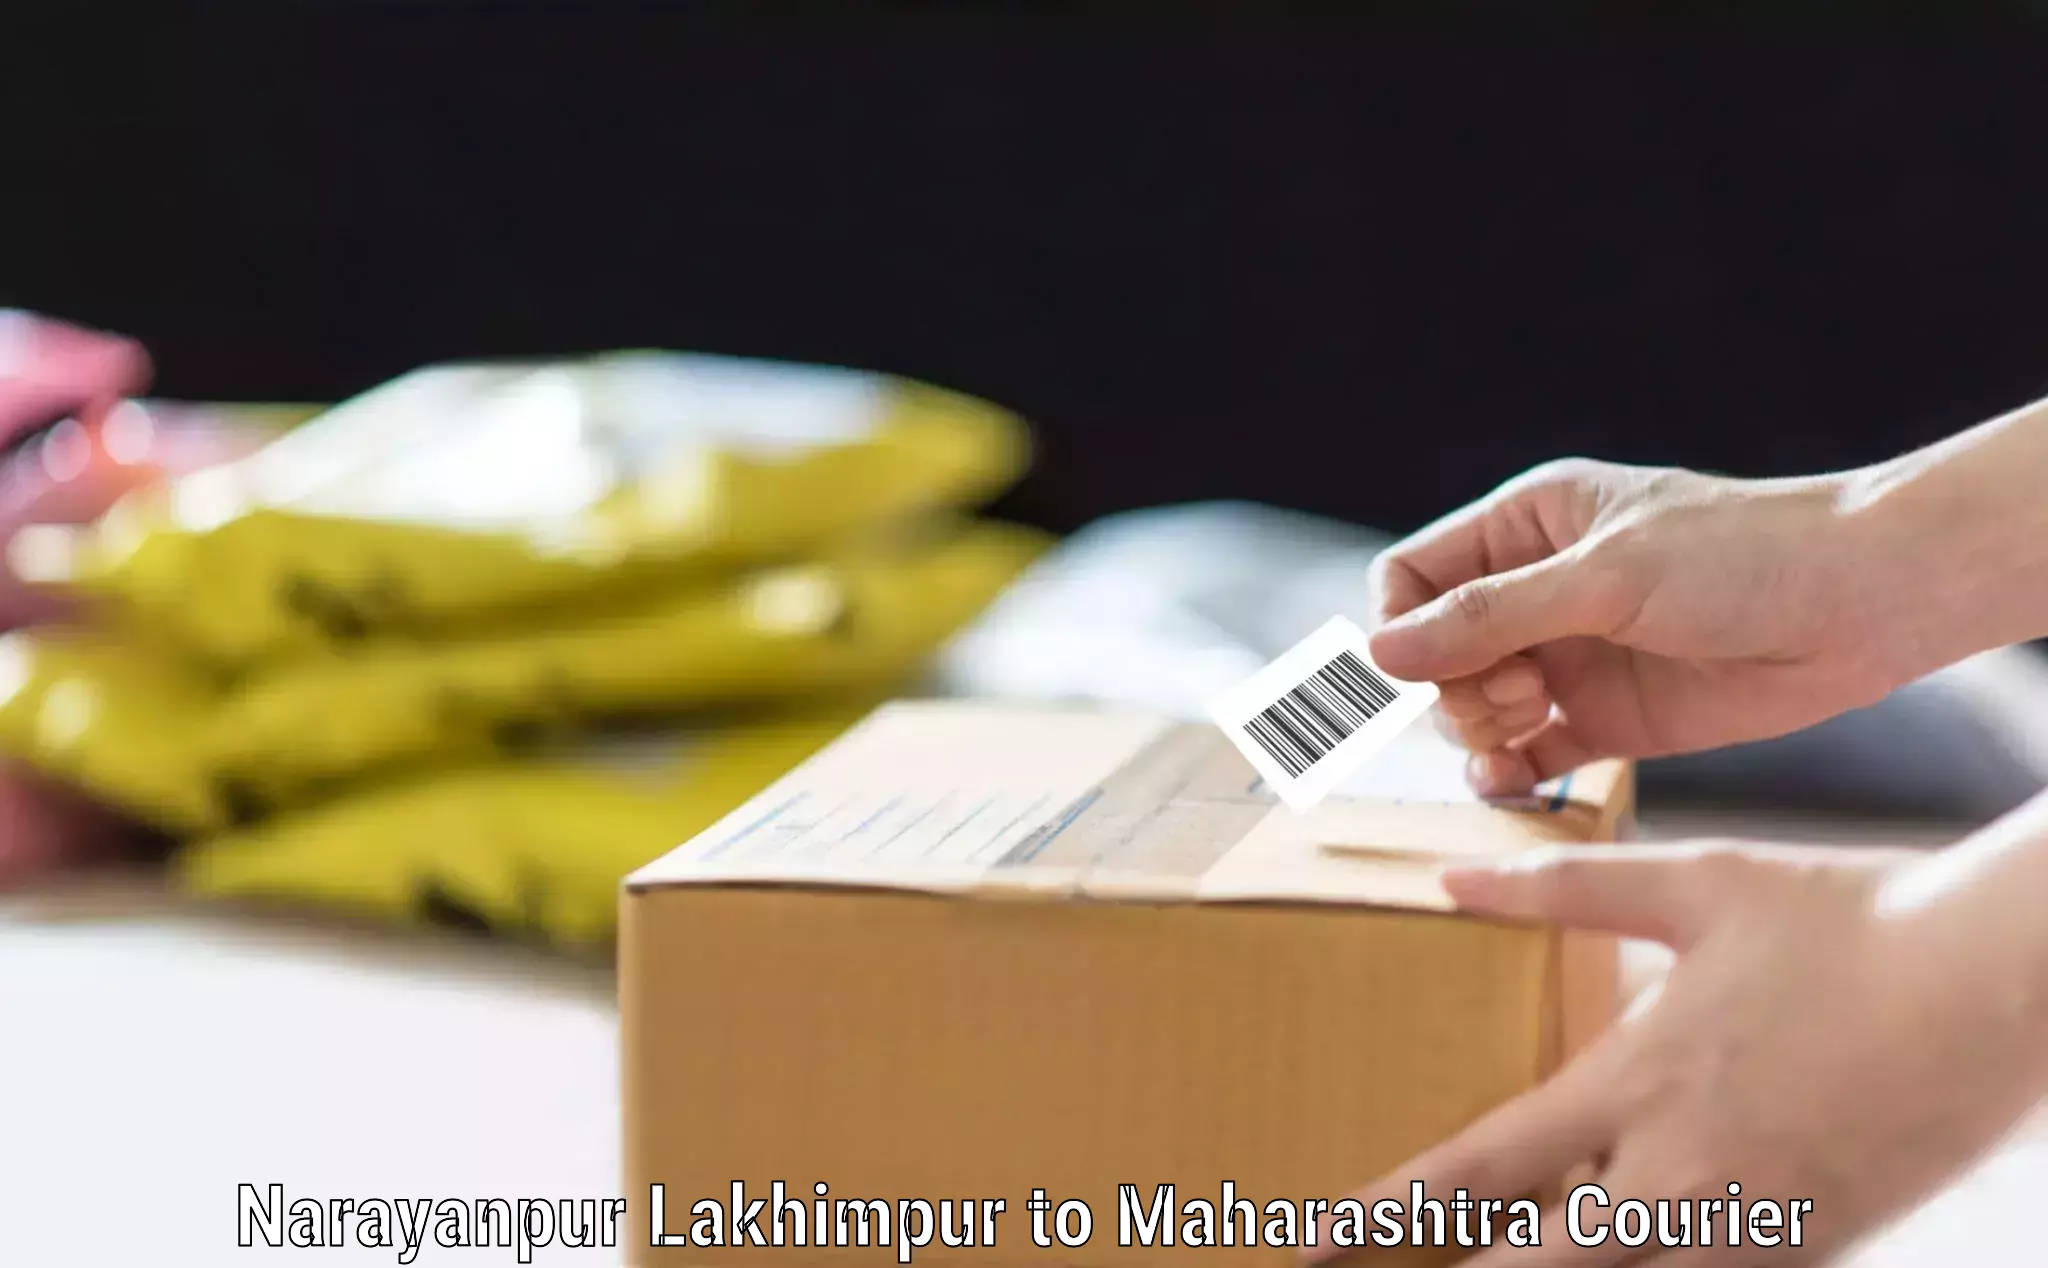 Baggage relocation service Narayanpur Lakhimpur to Maharashtra